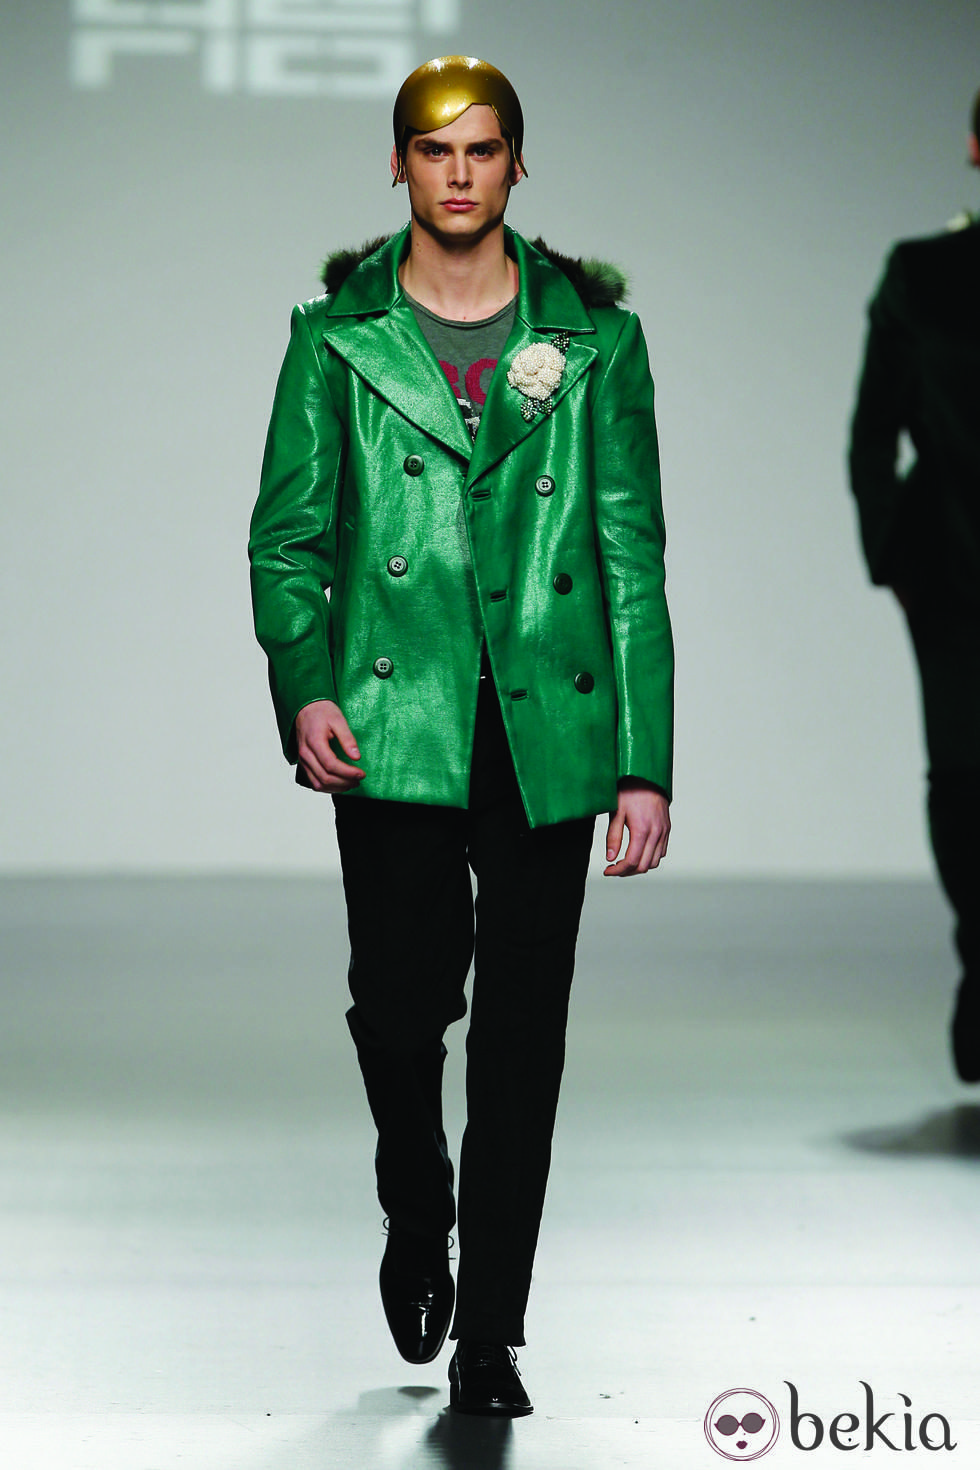 Chaqueta verde plastificada de David del Río en 'El Ego' de Fashion Week Madrid